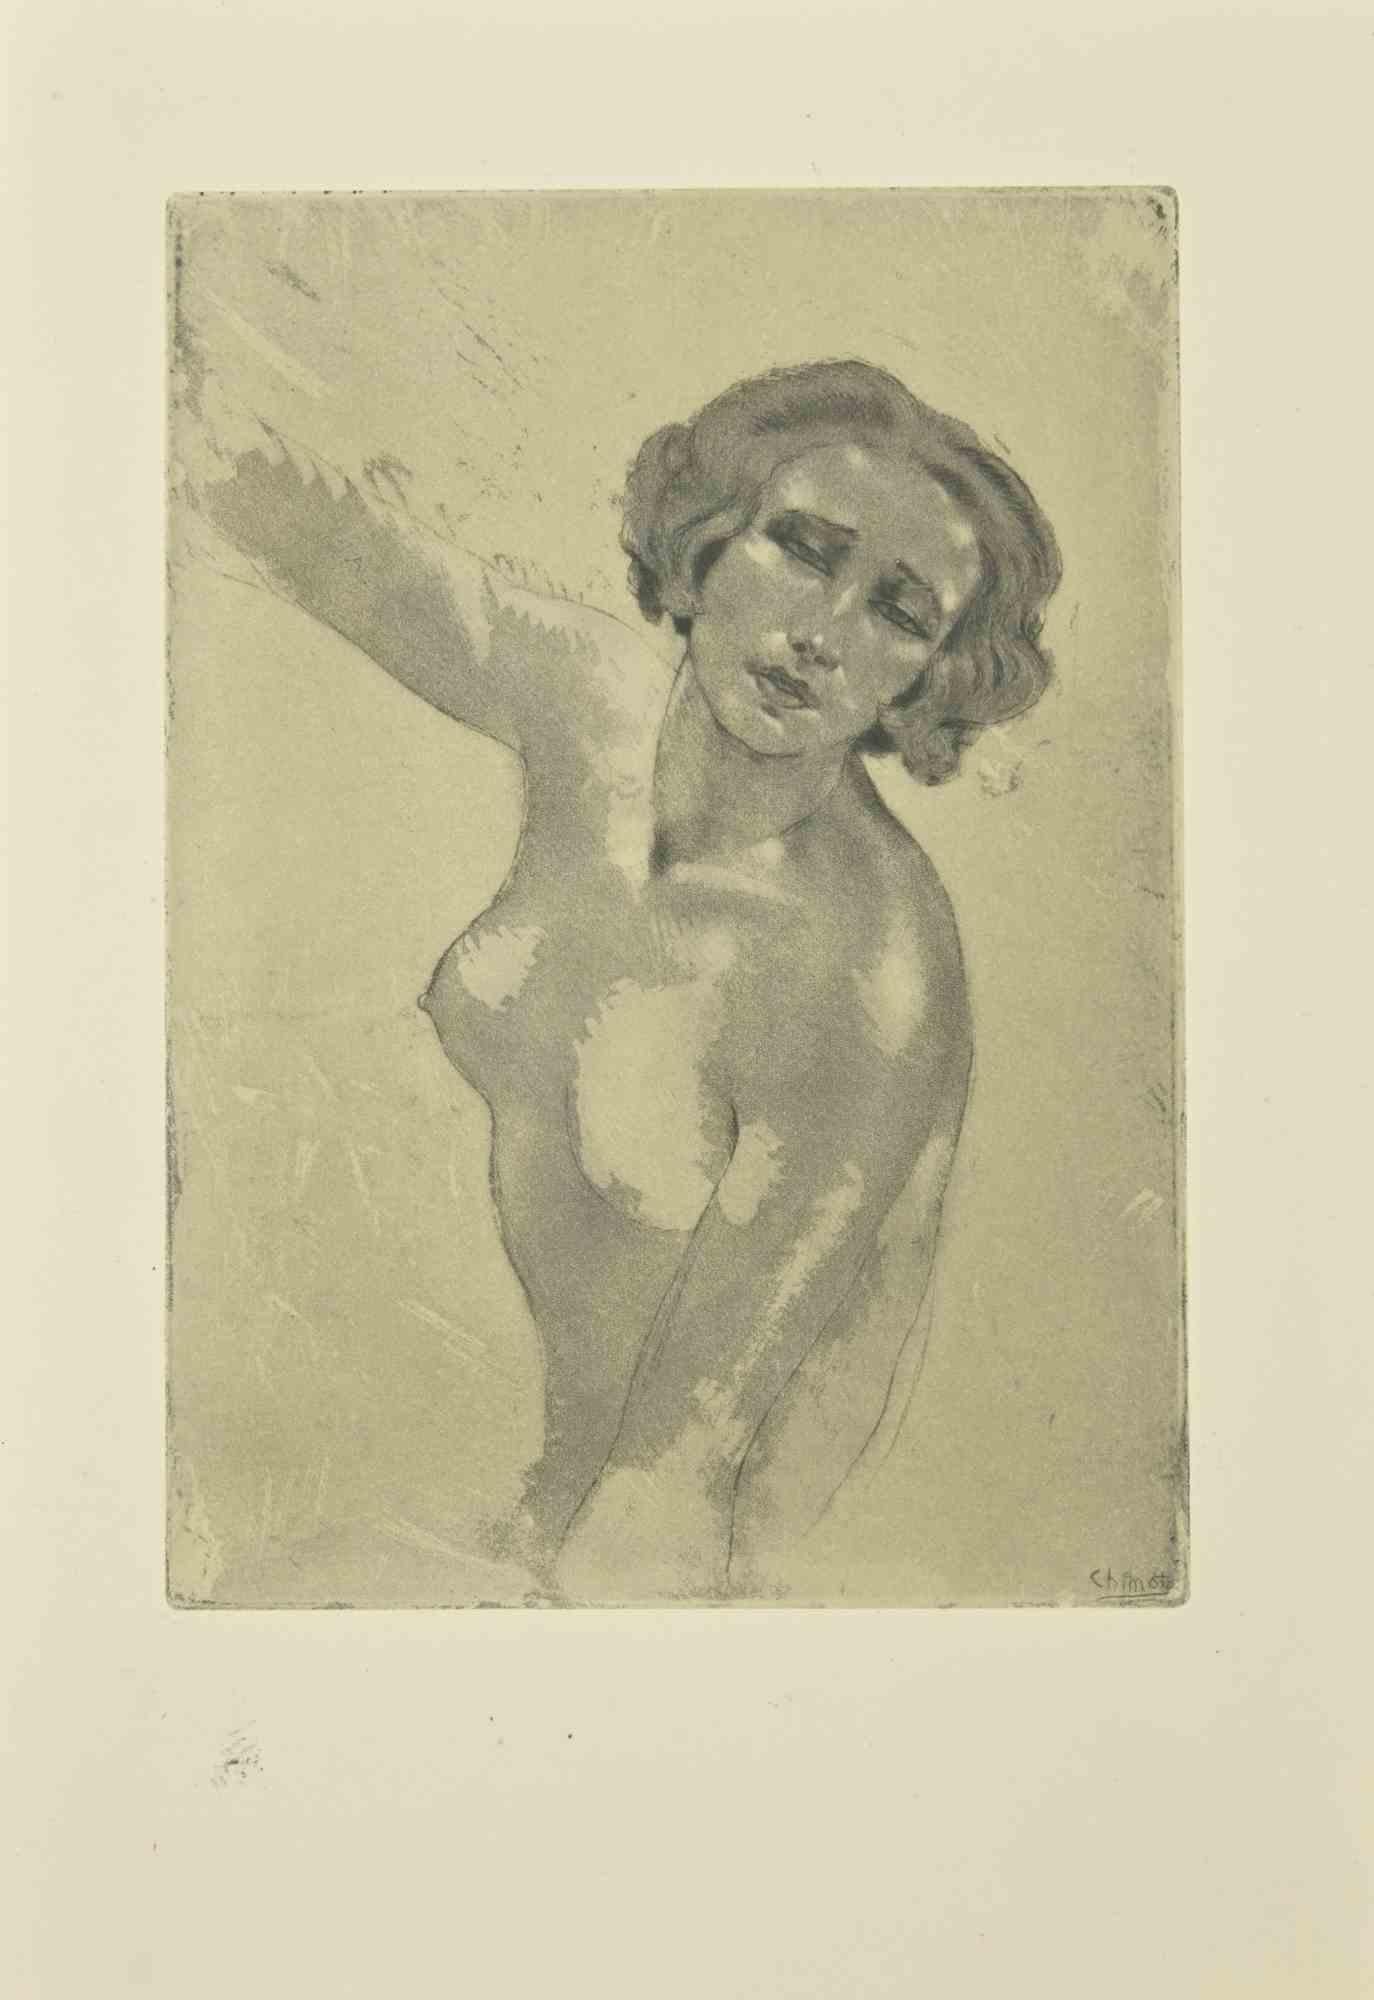 Akt ist eine Radierung von Edouard Chimot aus den 1930er Jahren.

Signiert auf der Platte vom Künstler in der rechten unteren Ecke.

Gute Bedingungen.

Édouard Chimot (26. November 1880 - 7. Juni 1959) war ein französischer Künstler, Illustrator und